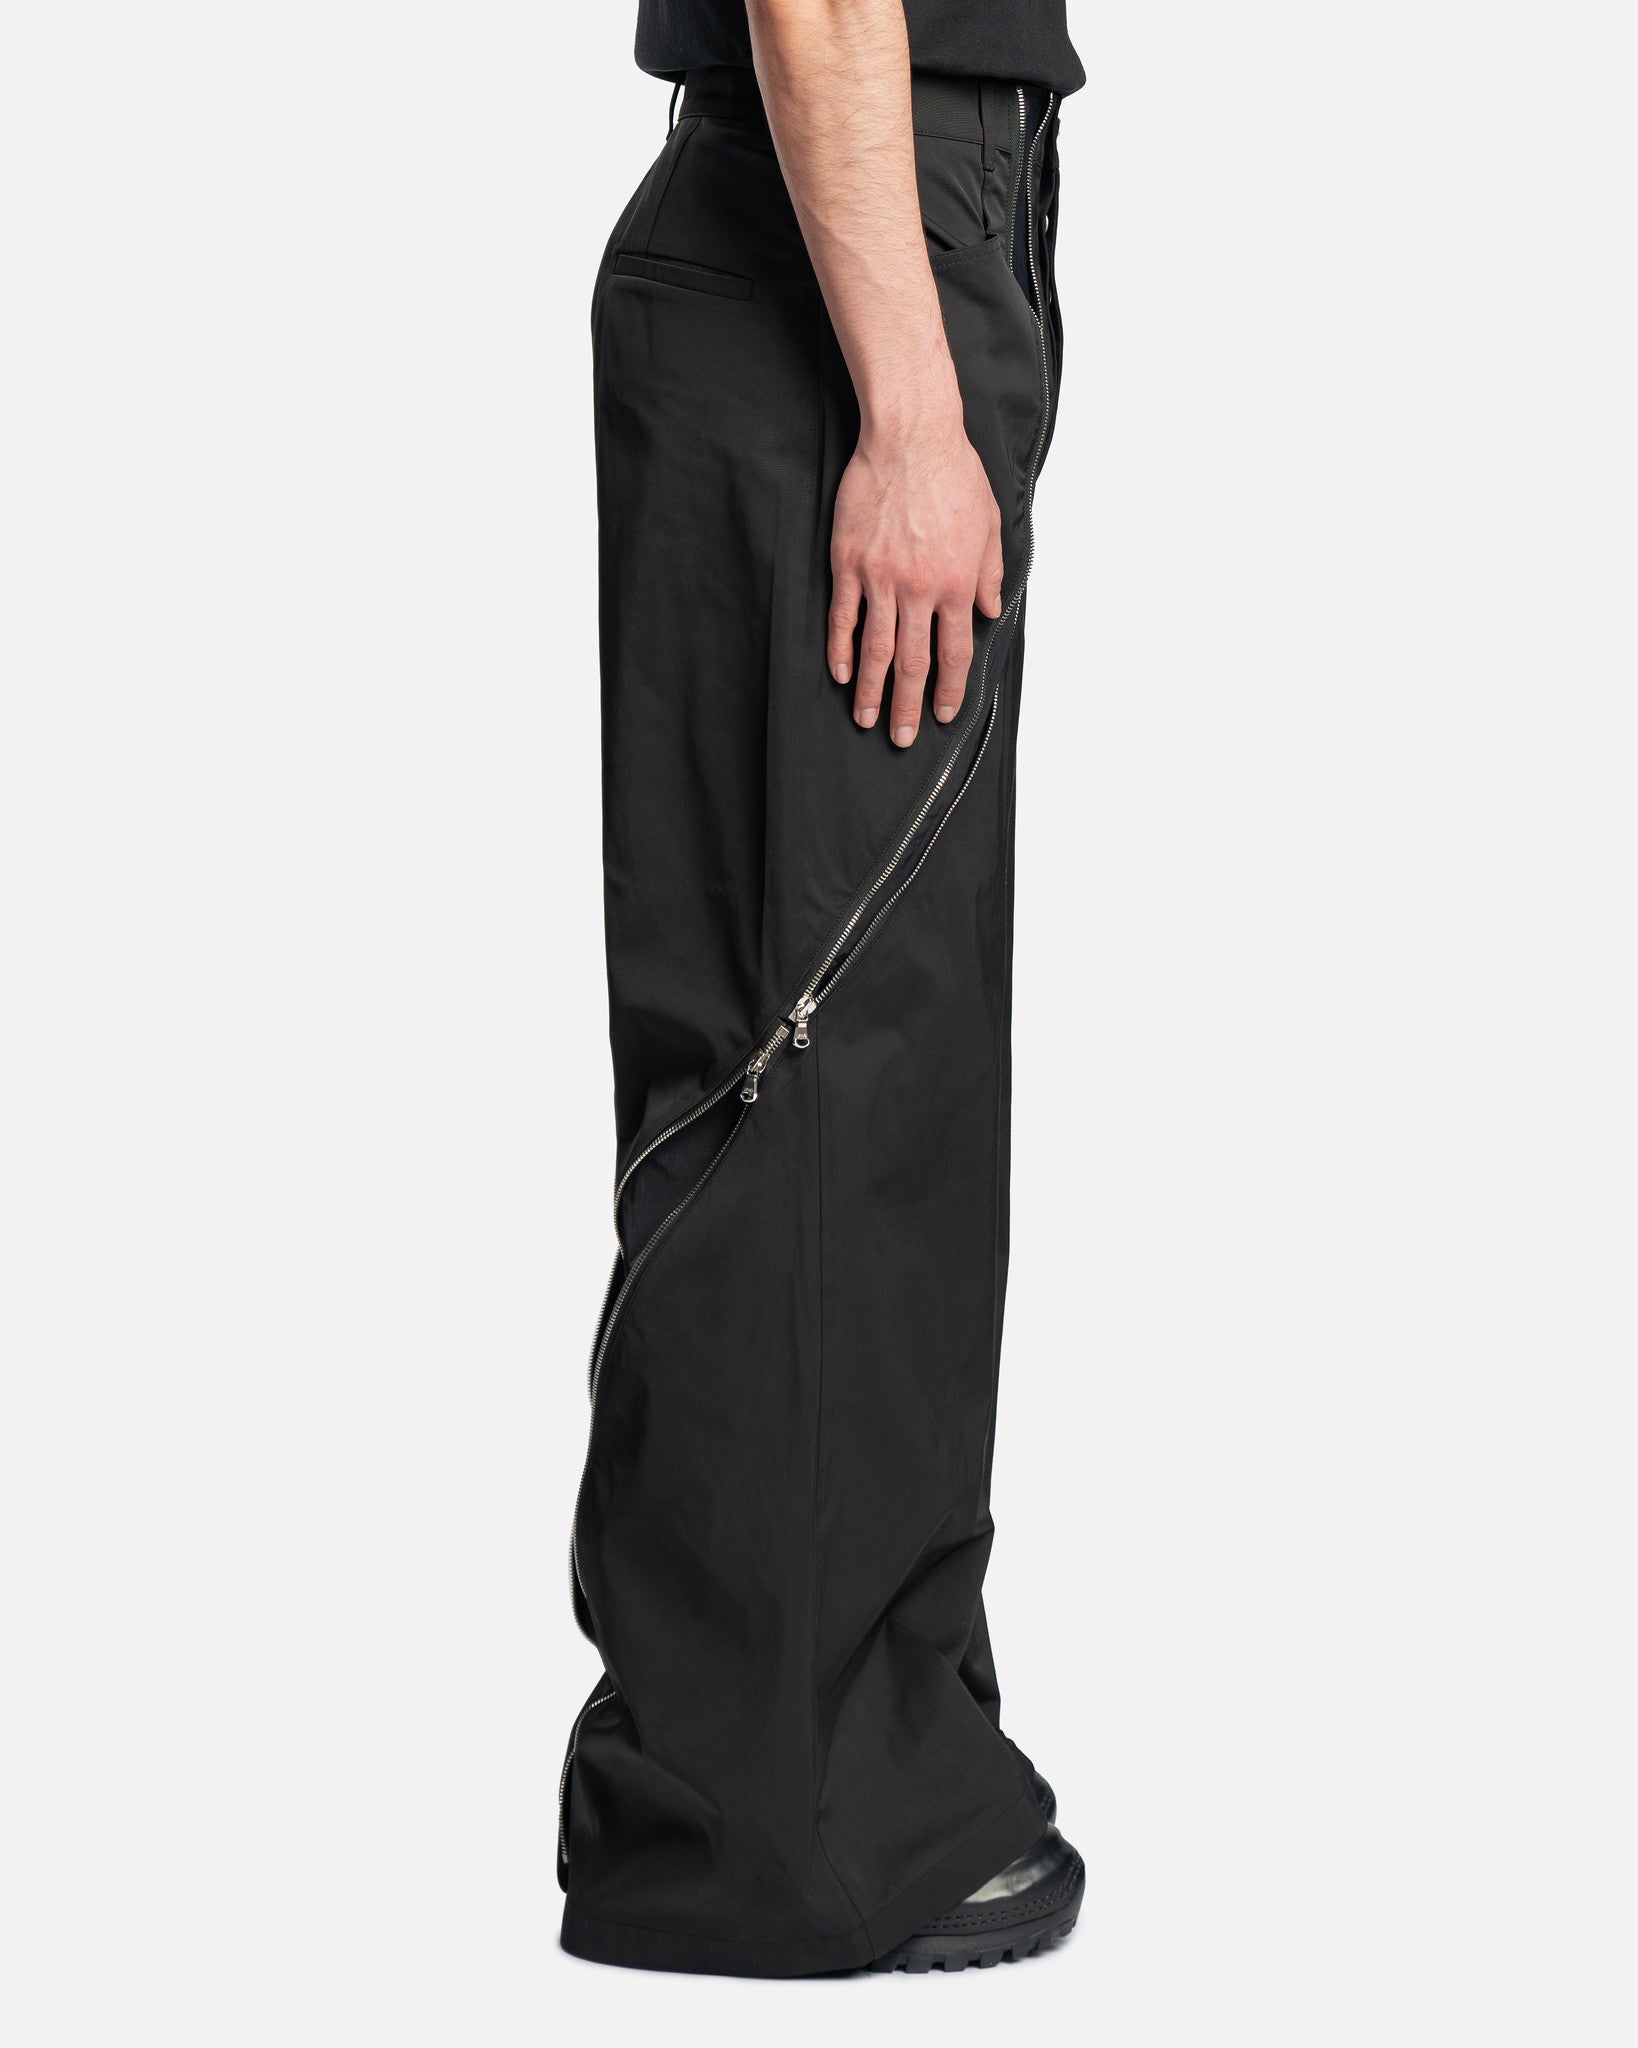 税込?送料無料】 FFFPOSTALSERVICE Zip Trouser パンツ ブラック - パンツ